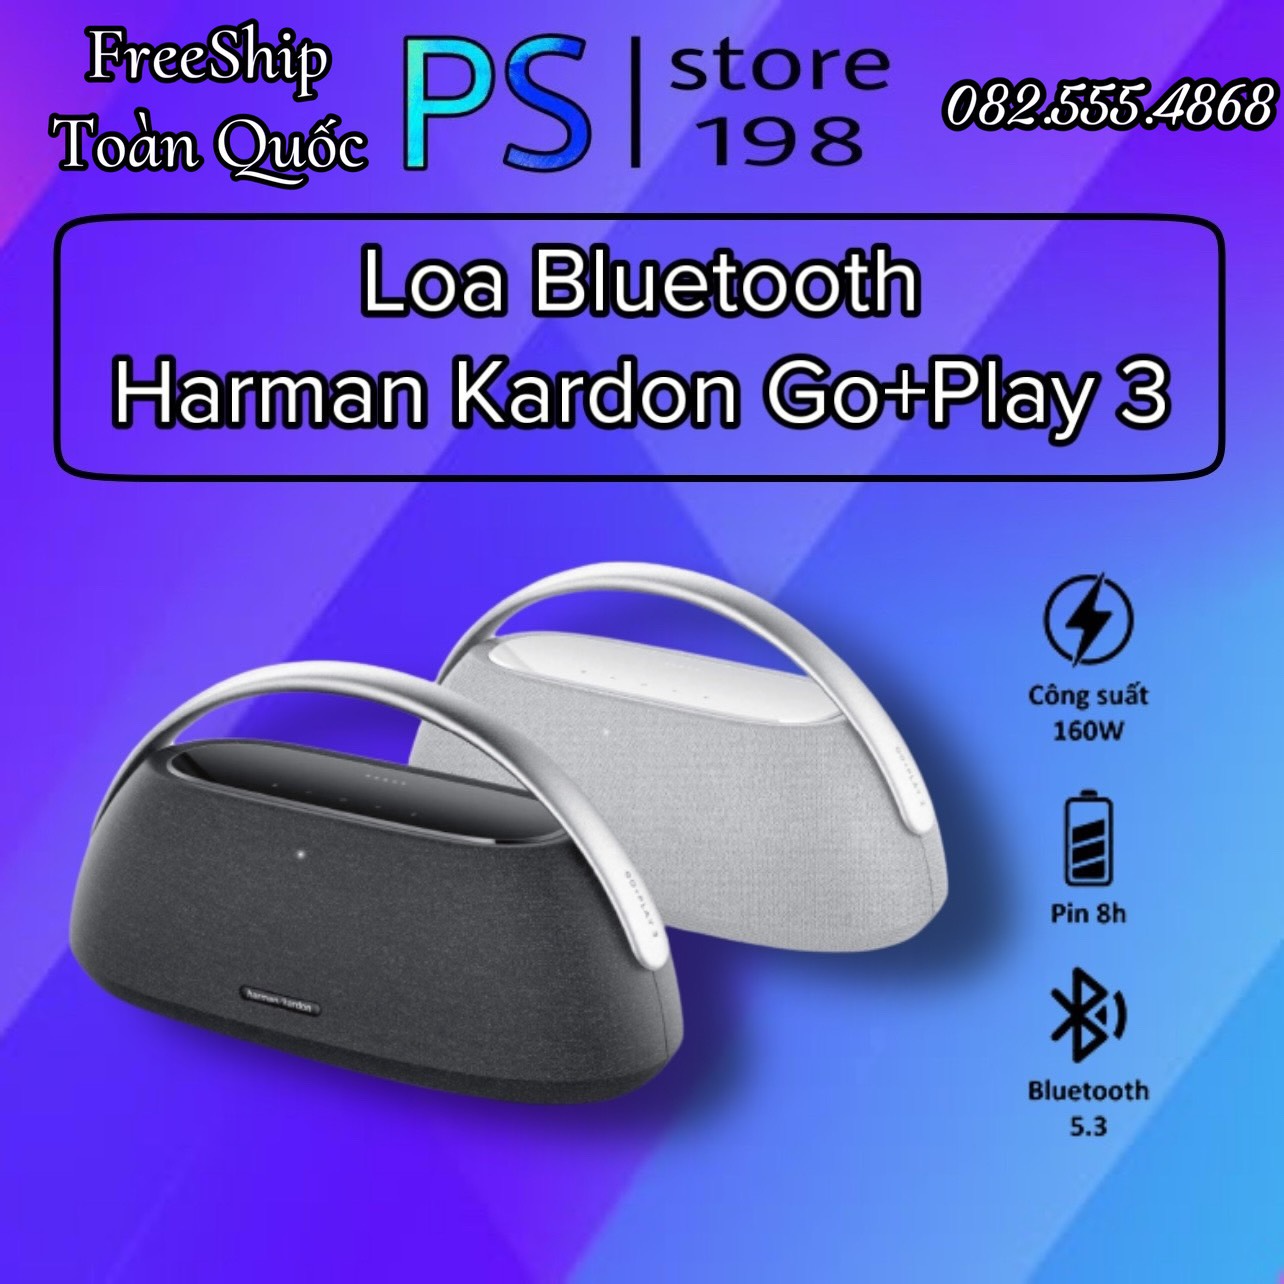 Loa Bluetooth Harman Kardon Go Play 3 - Chính Hãng PGI (Bảo Hành 19 T)